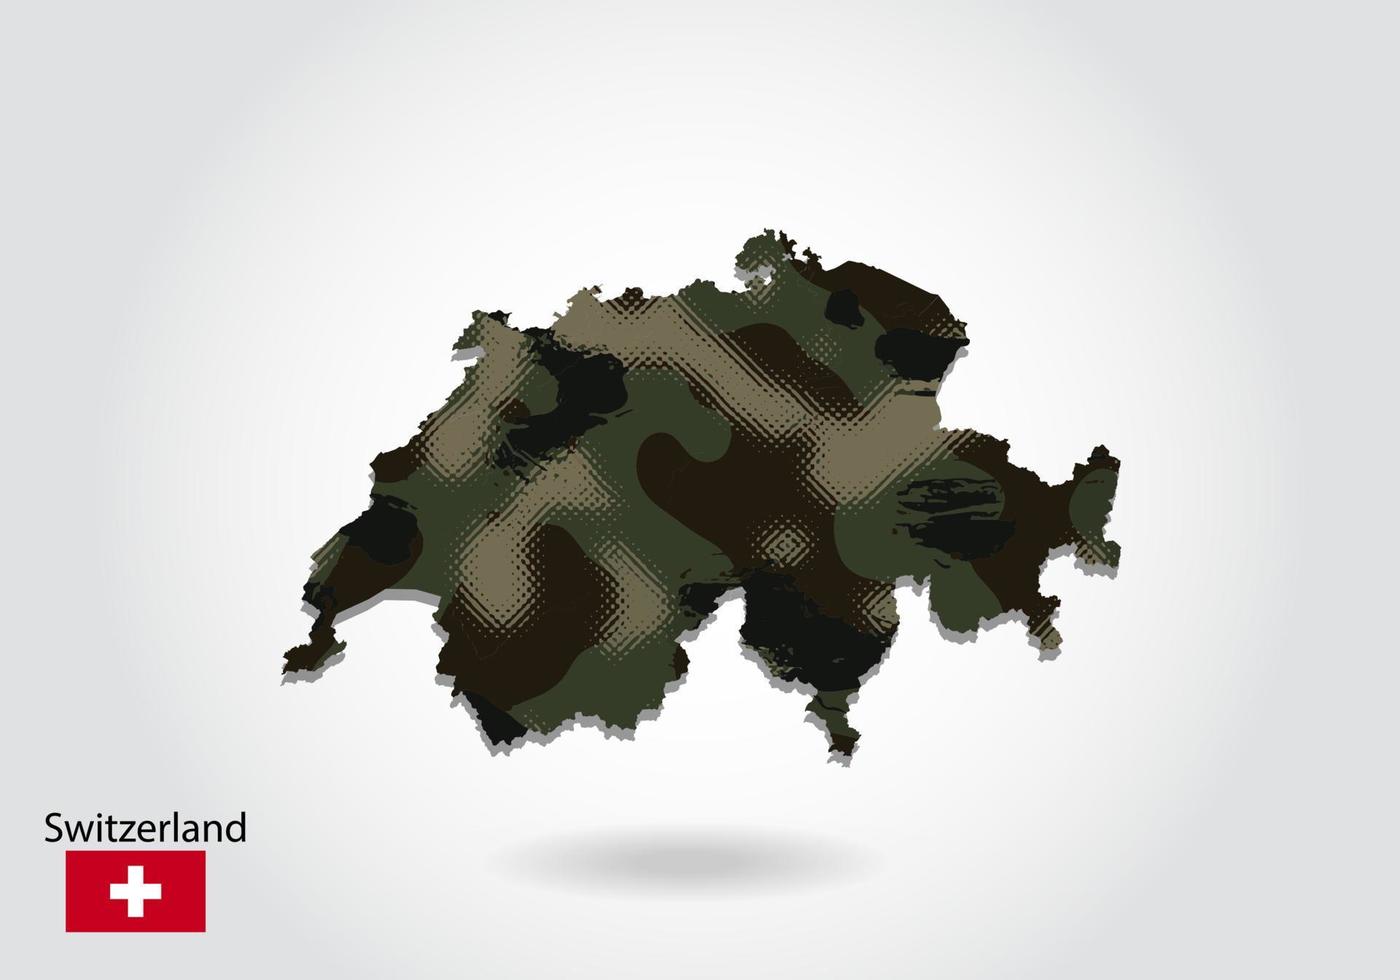 mapa da suíça com padrão de camuflagem, floresta - textura verde no mapa. conceito militar para exército, soldado e guerra. brasão, bandeira. vetor